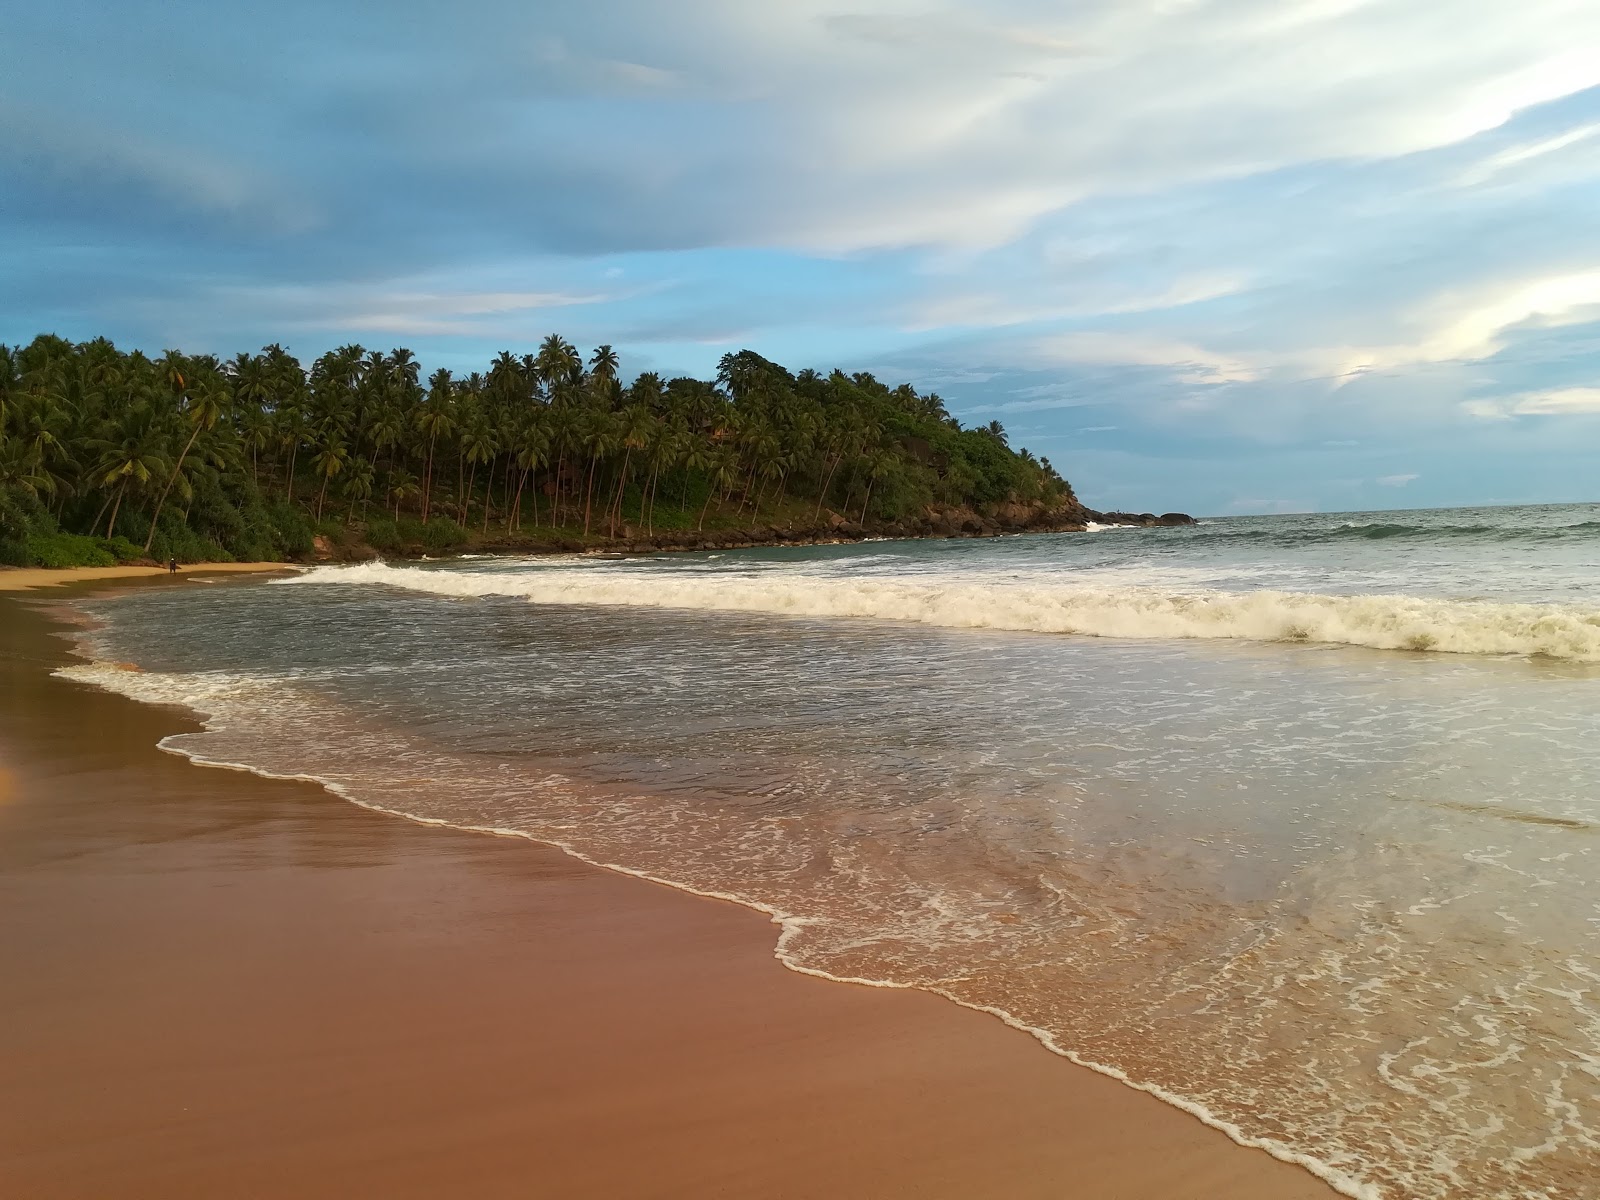 Piyagama beach'in fotoğrafı imkanlar alanı